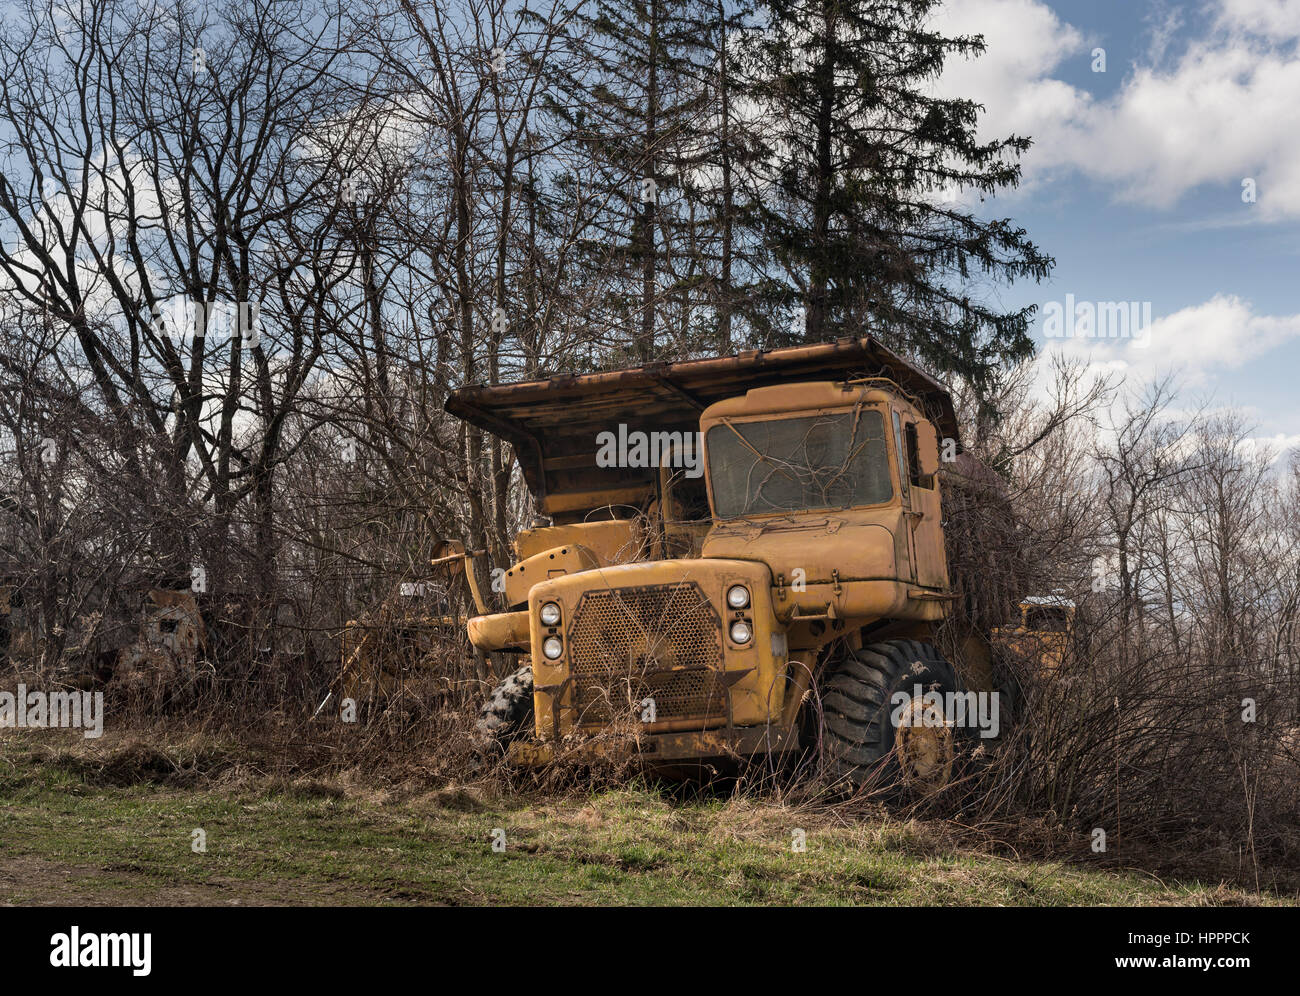 La oxidación y cubierto de amarillo pesada carretilla industrial y equipos abandonados en recesión económica Foto de stock